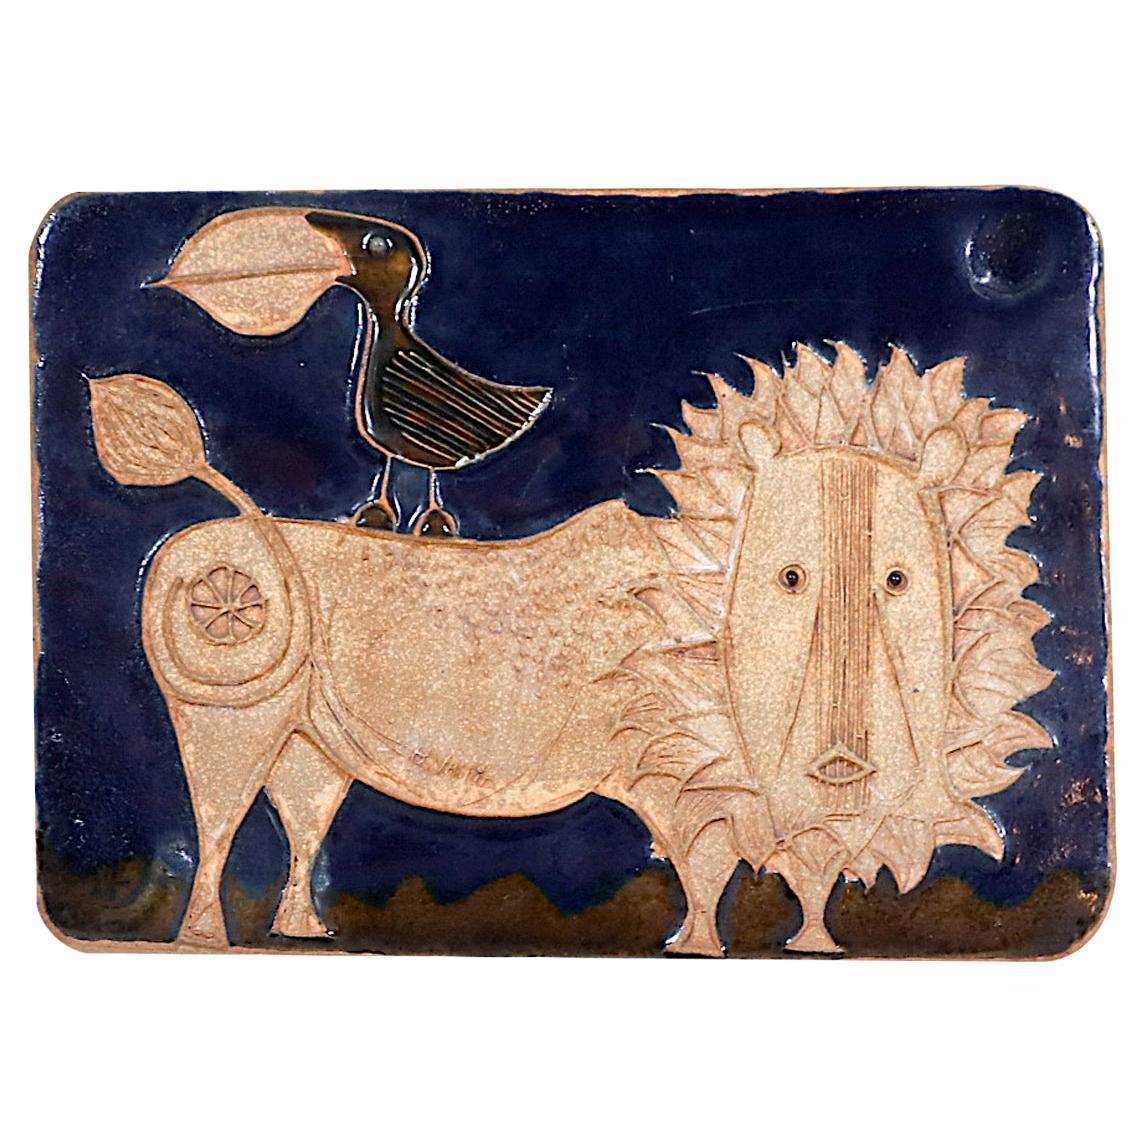 California Modern "Bird & Lion" Ceramic Plaque Art Work by Bertil Vallien